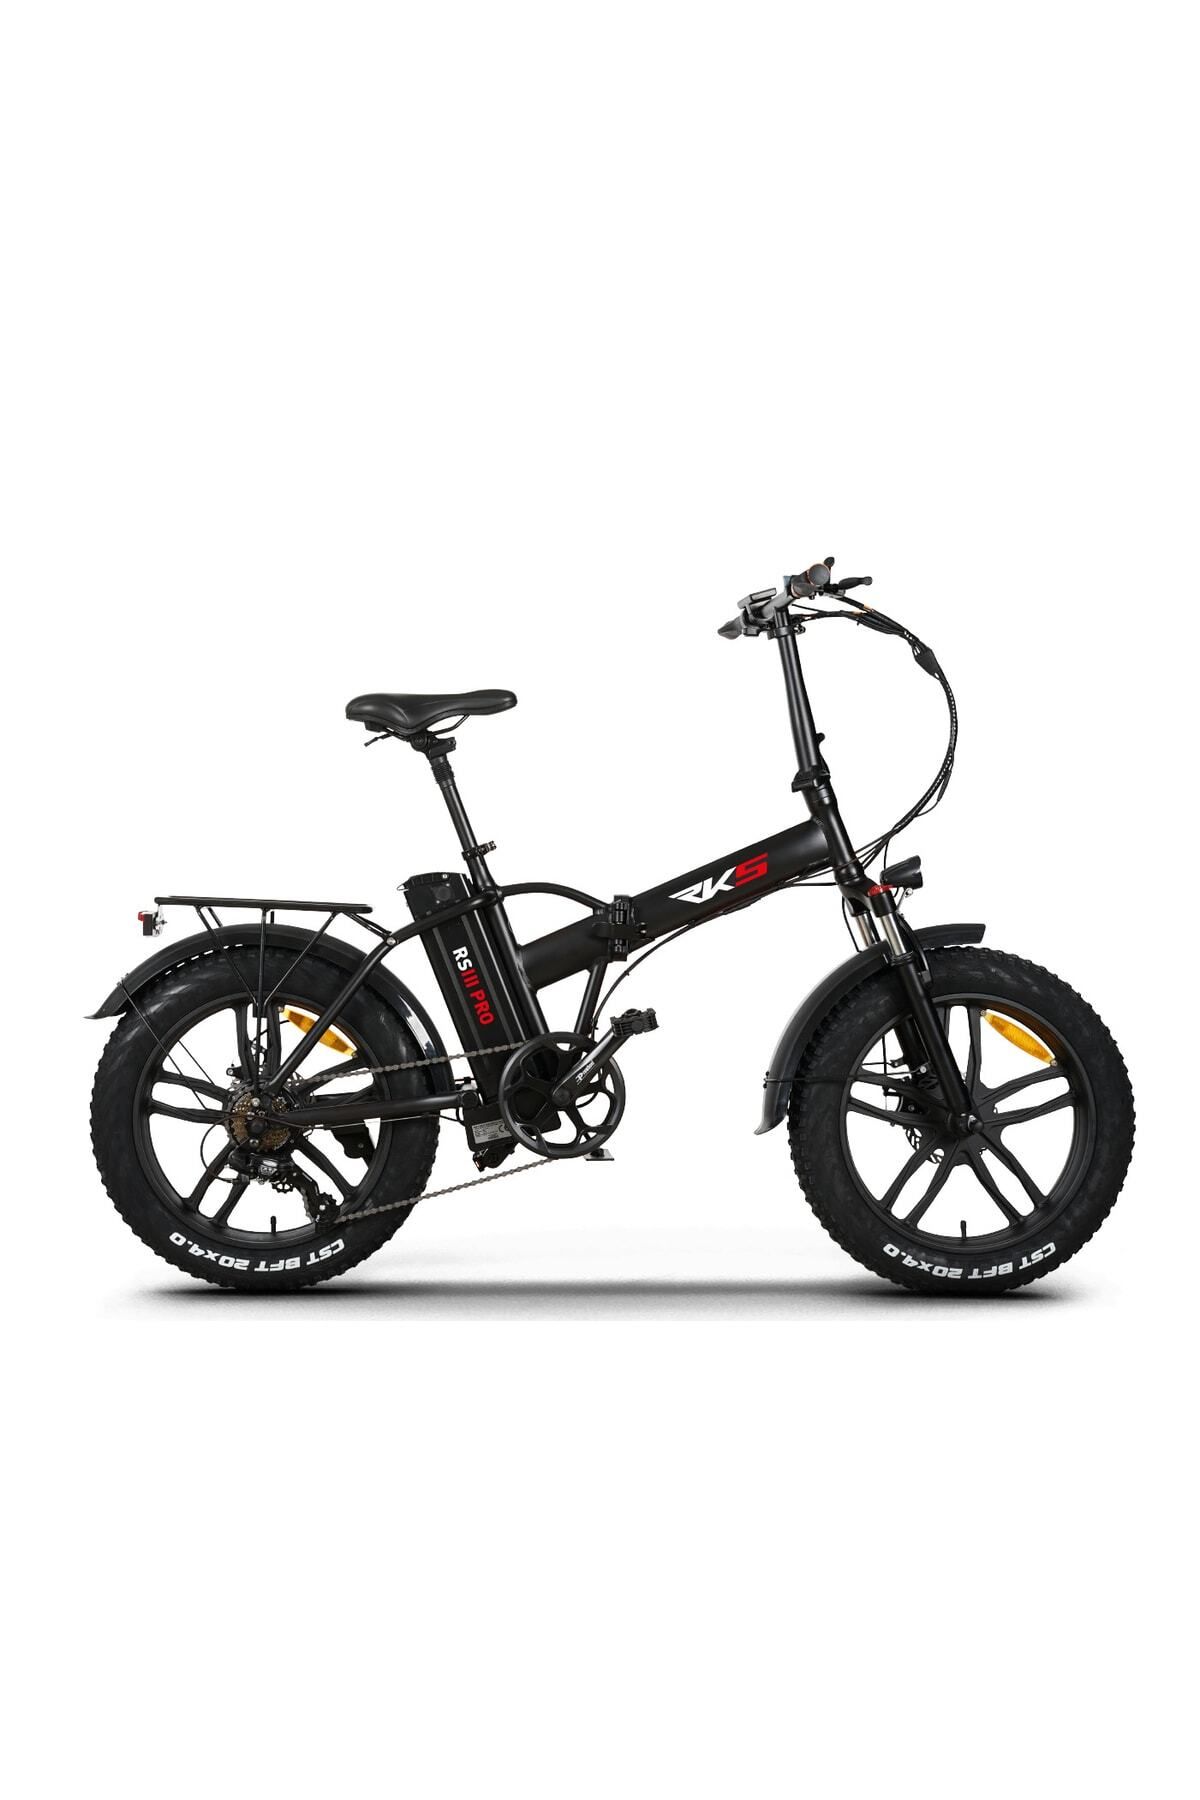 RKS -Elektrikli Bisiklet Rks Rsııı Pro X Elektrikli Bisiklet